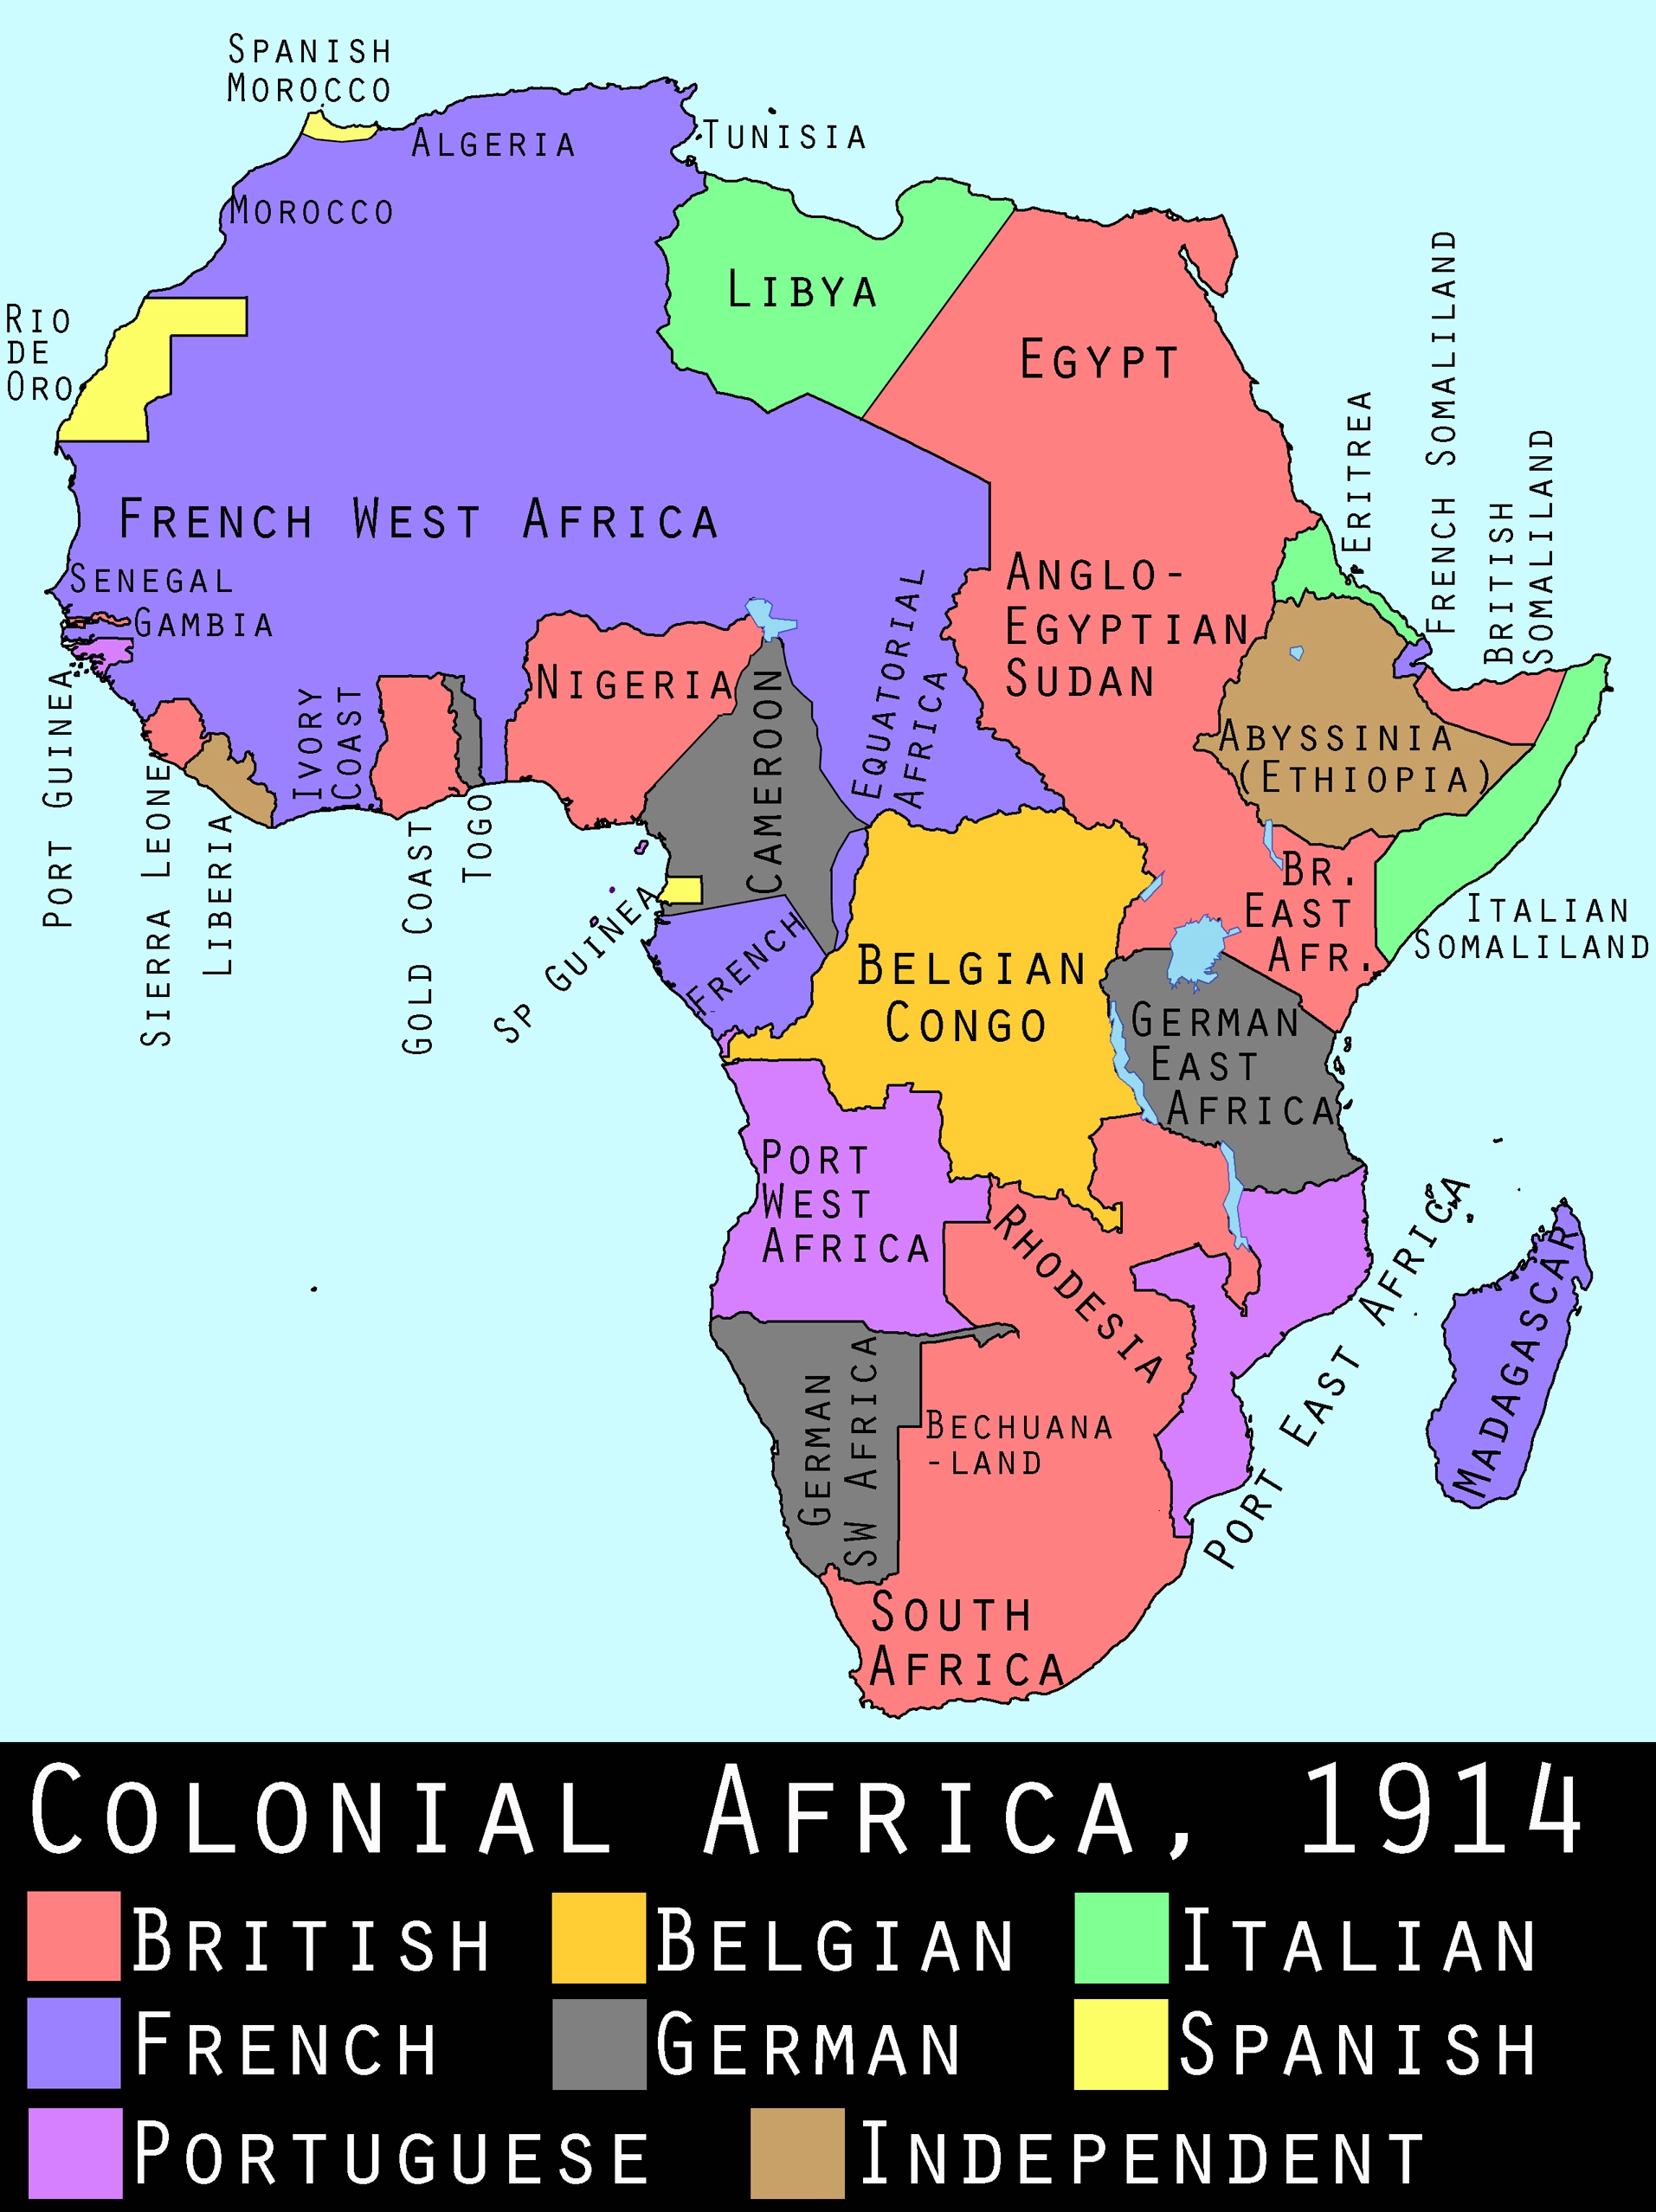 Africa prior to World War One.